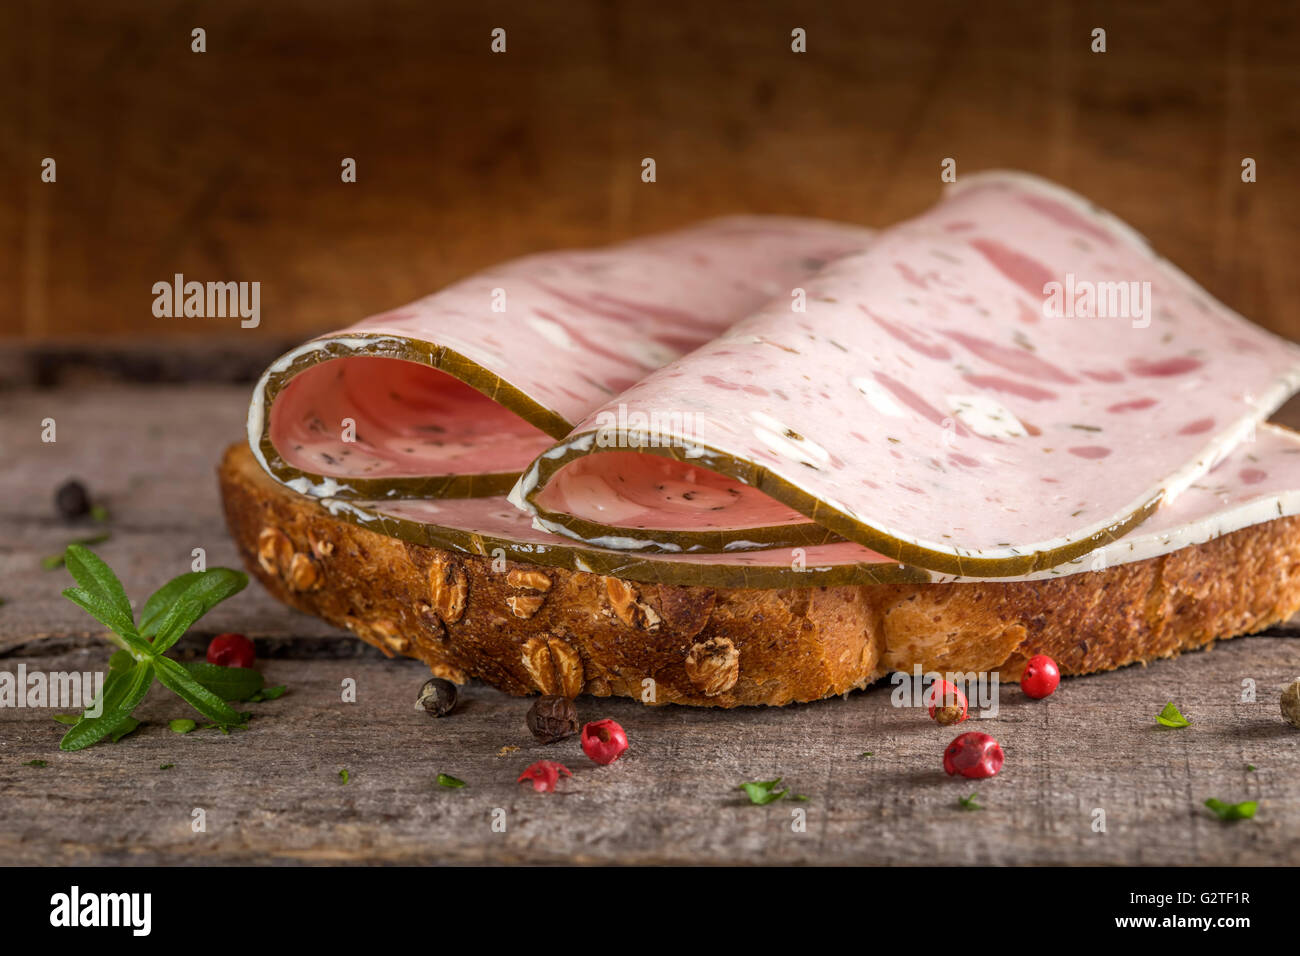 Viandes de spécialité sandwich fait avec fromage de brebis et feuilles de vigne Banque D'Images